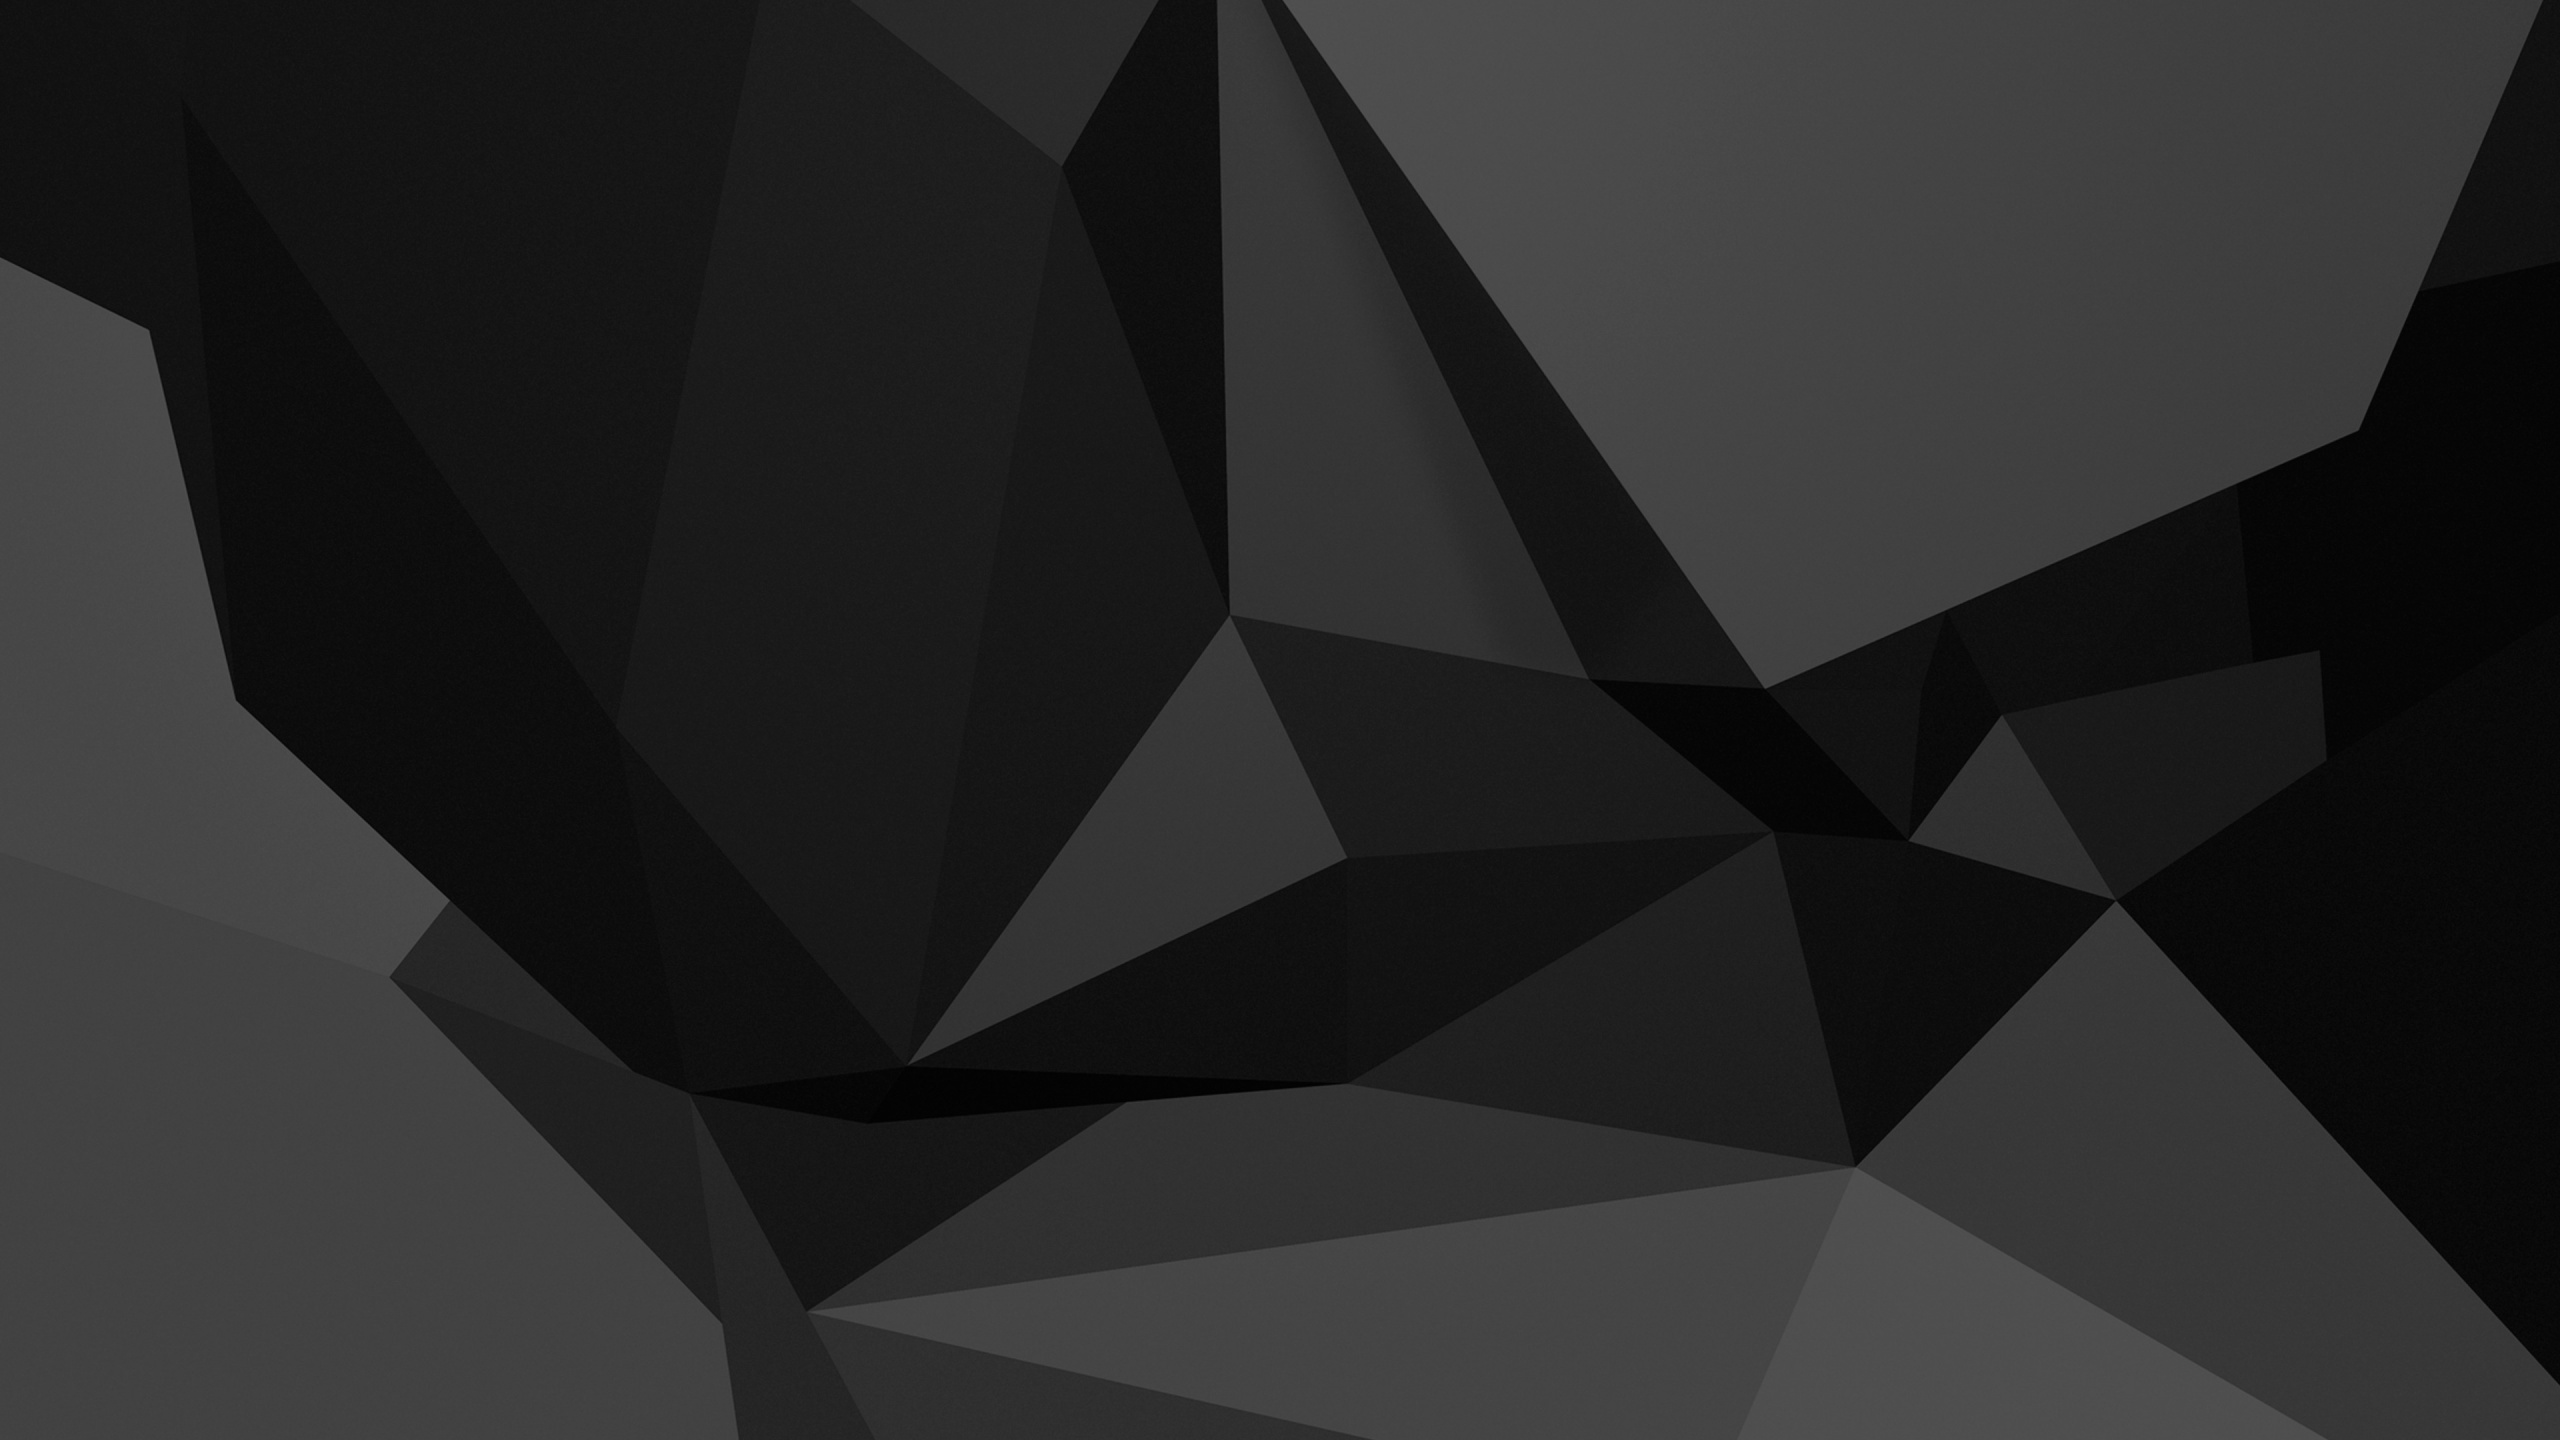 图形处理单元, 黑色的, 3d模拟, 三角形, 对称 壁纸 2560x1440 允许